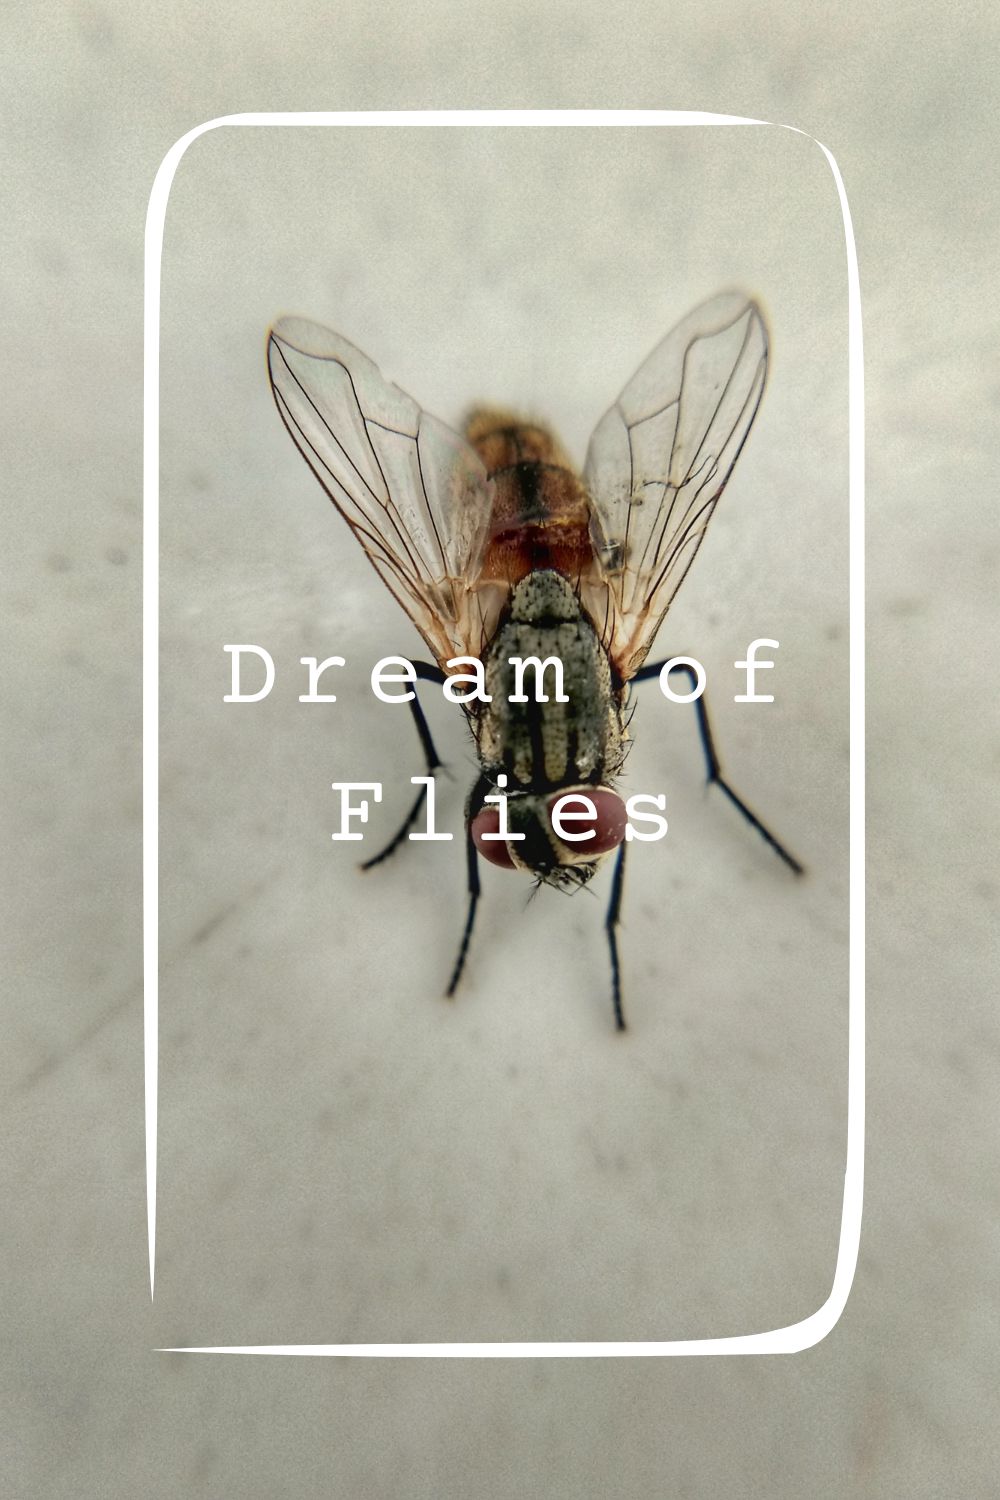 9 Dream of Flies Meanings1